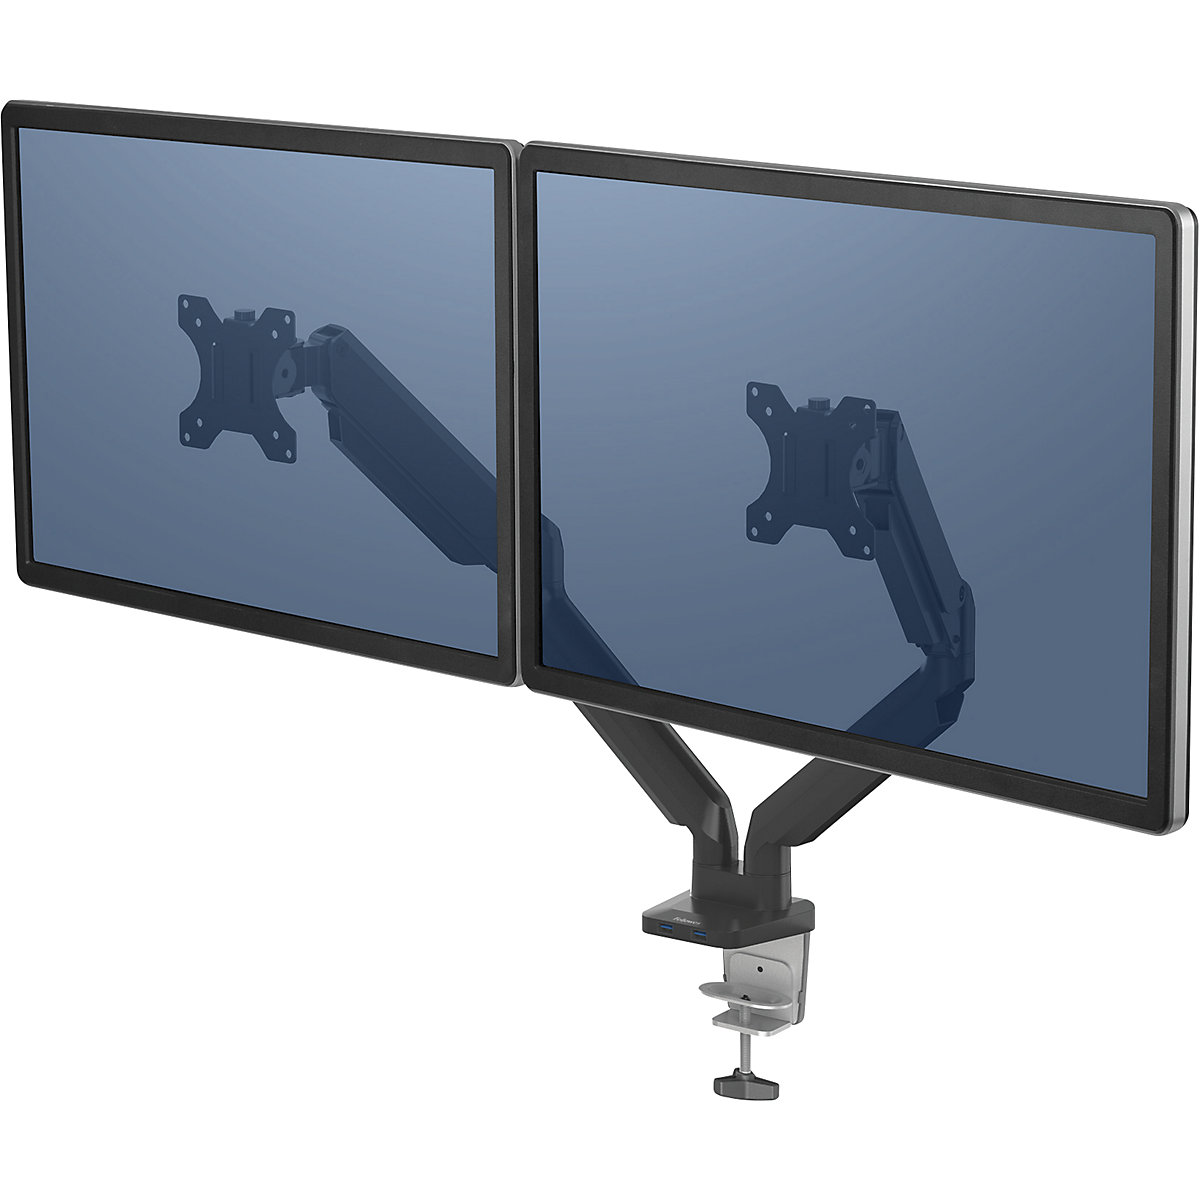 Bras porte-écran série PLATINUM – Fellowes, bras double pour 2 écrans, noir